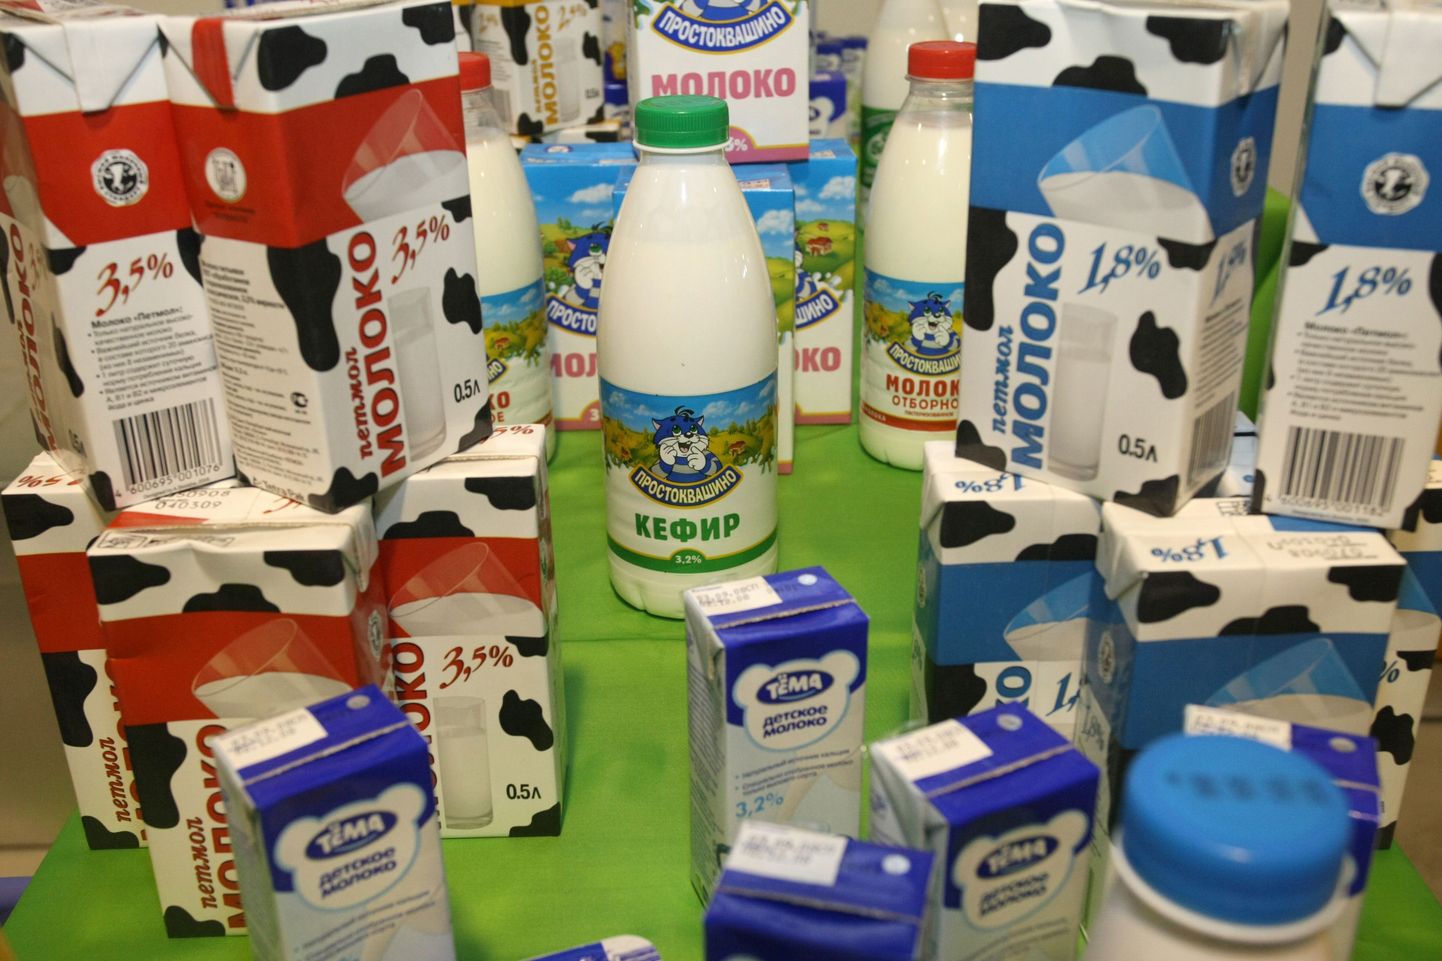 Vene piimatööstuse Unimilk toodang